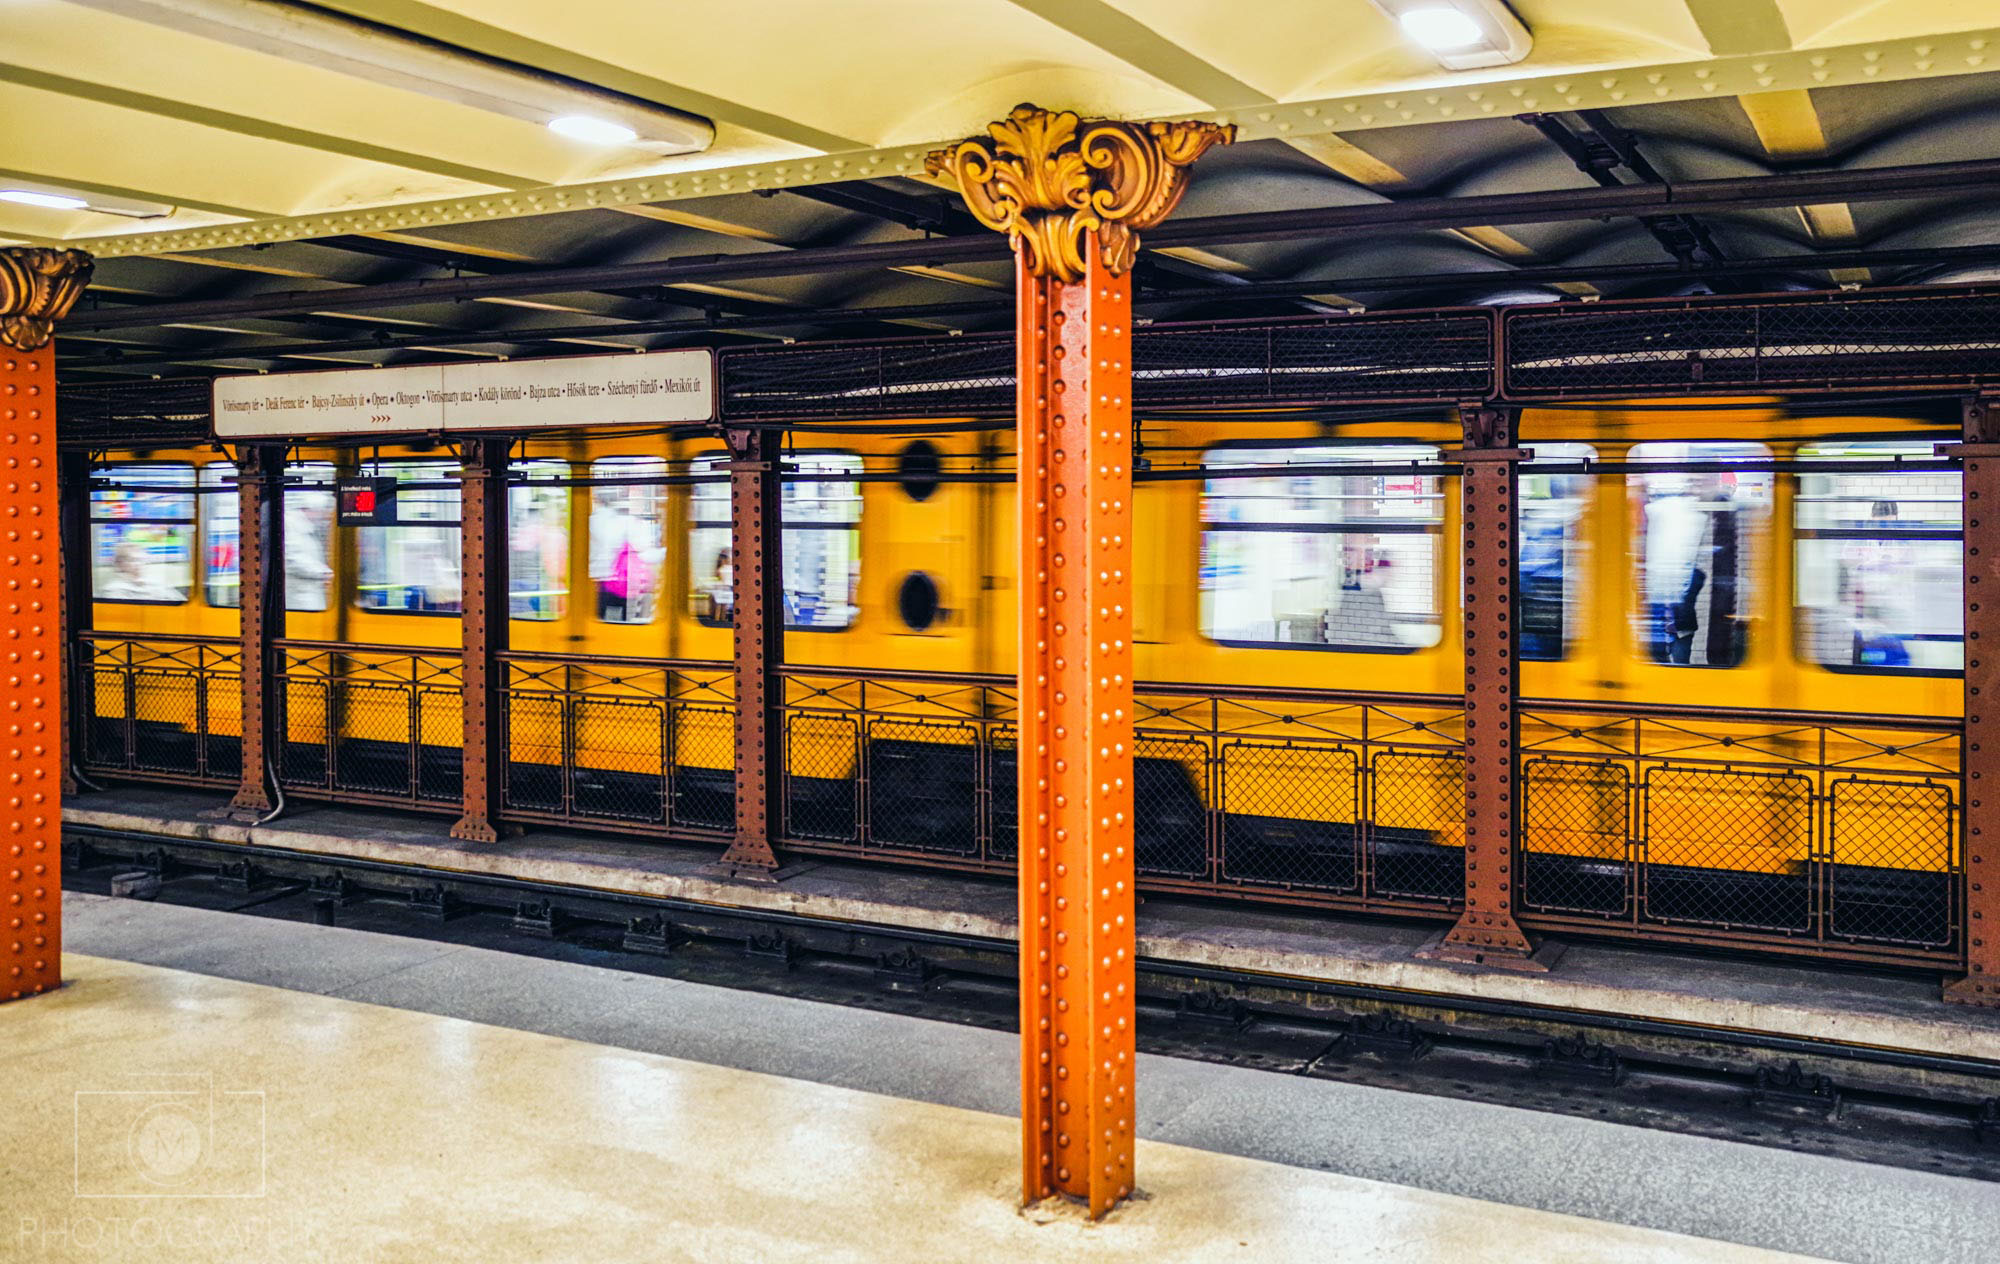 Budapeštianske metro - Stanica Opera